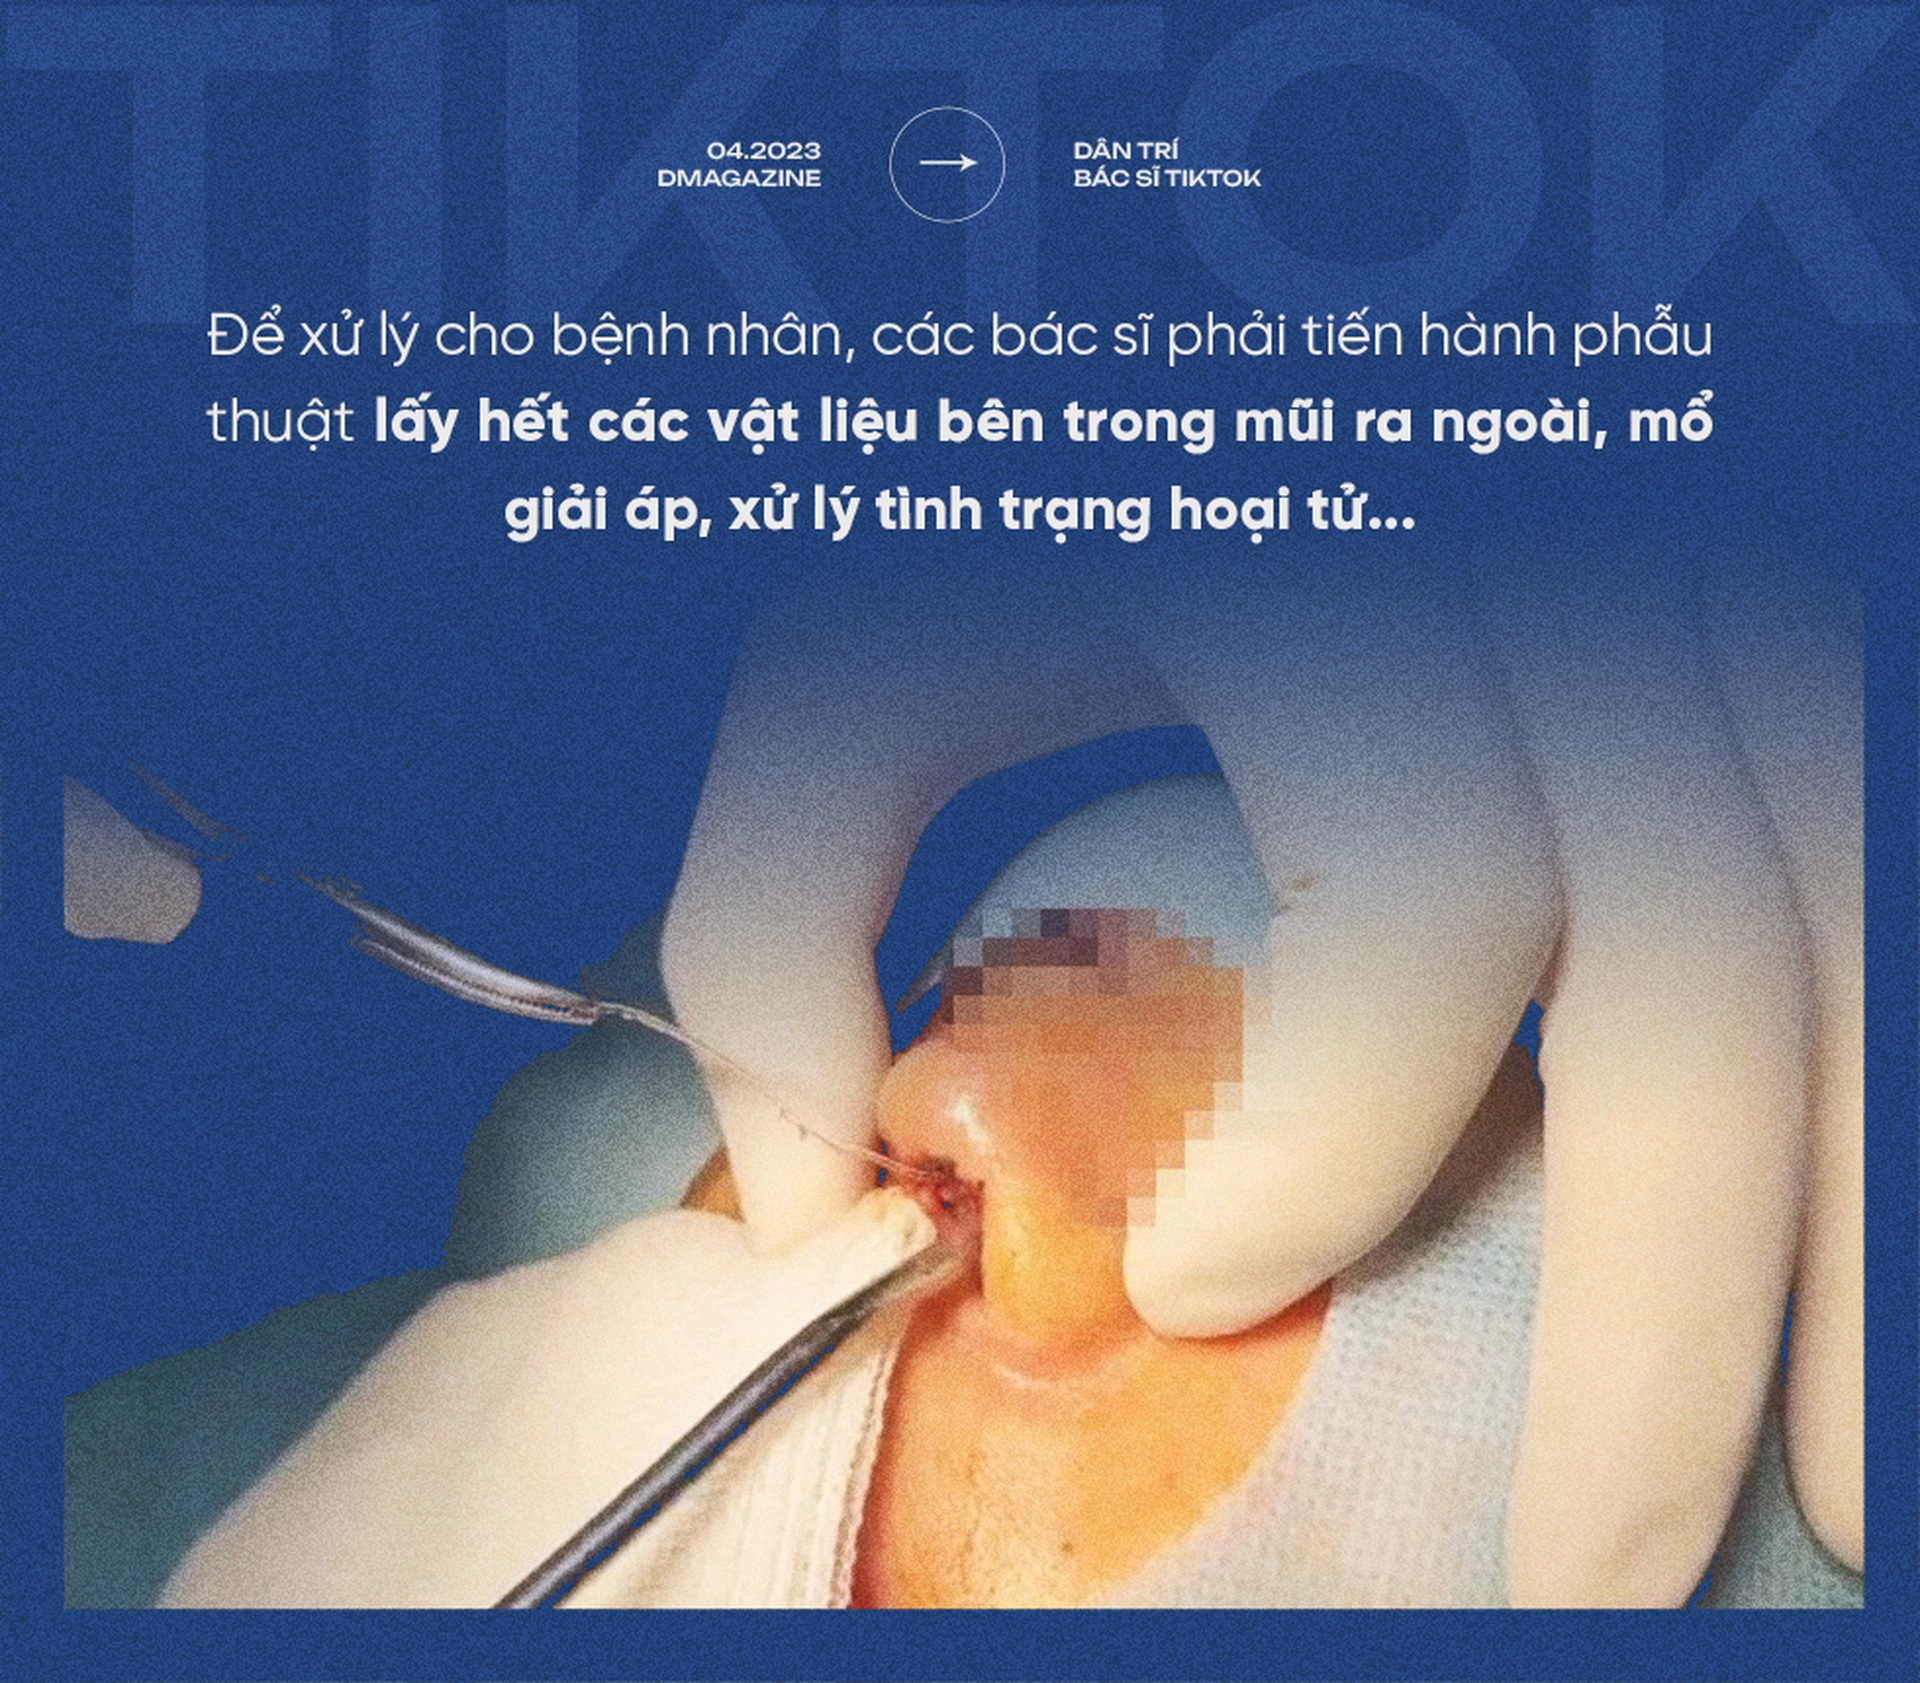 Nát mũi, hỏng mặt, biến chứng thai kỳ vì Bác sĩ Tiktok-2